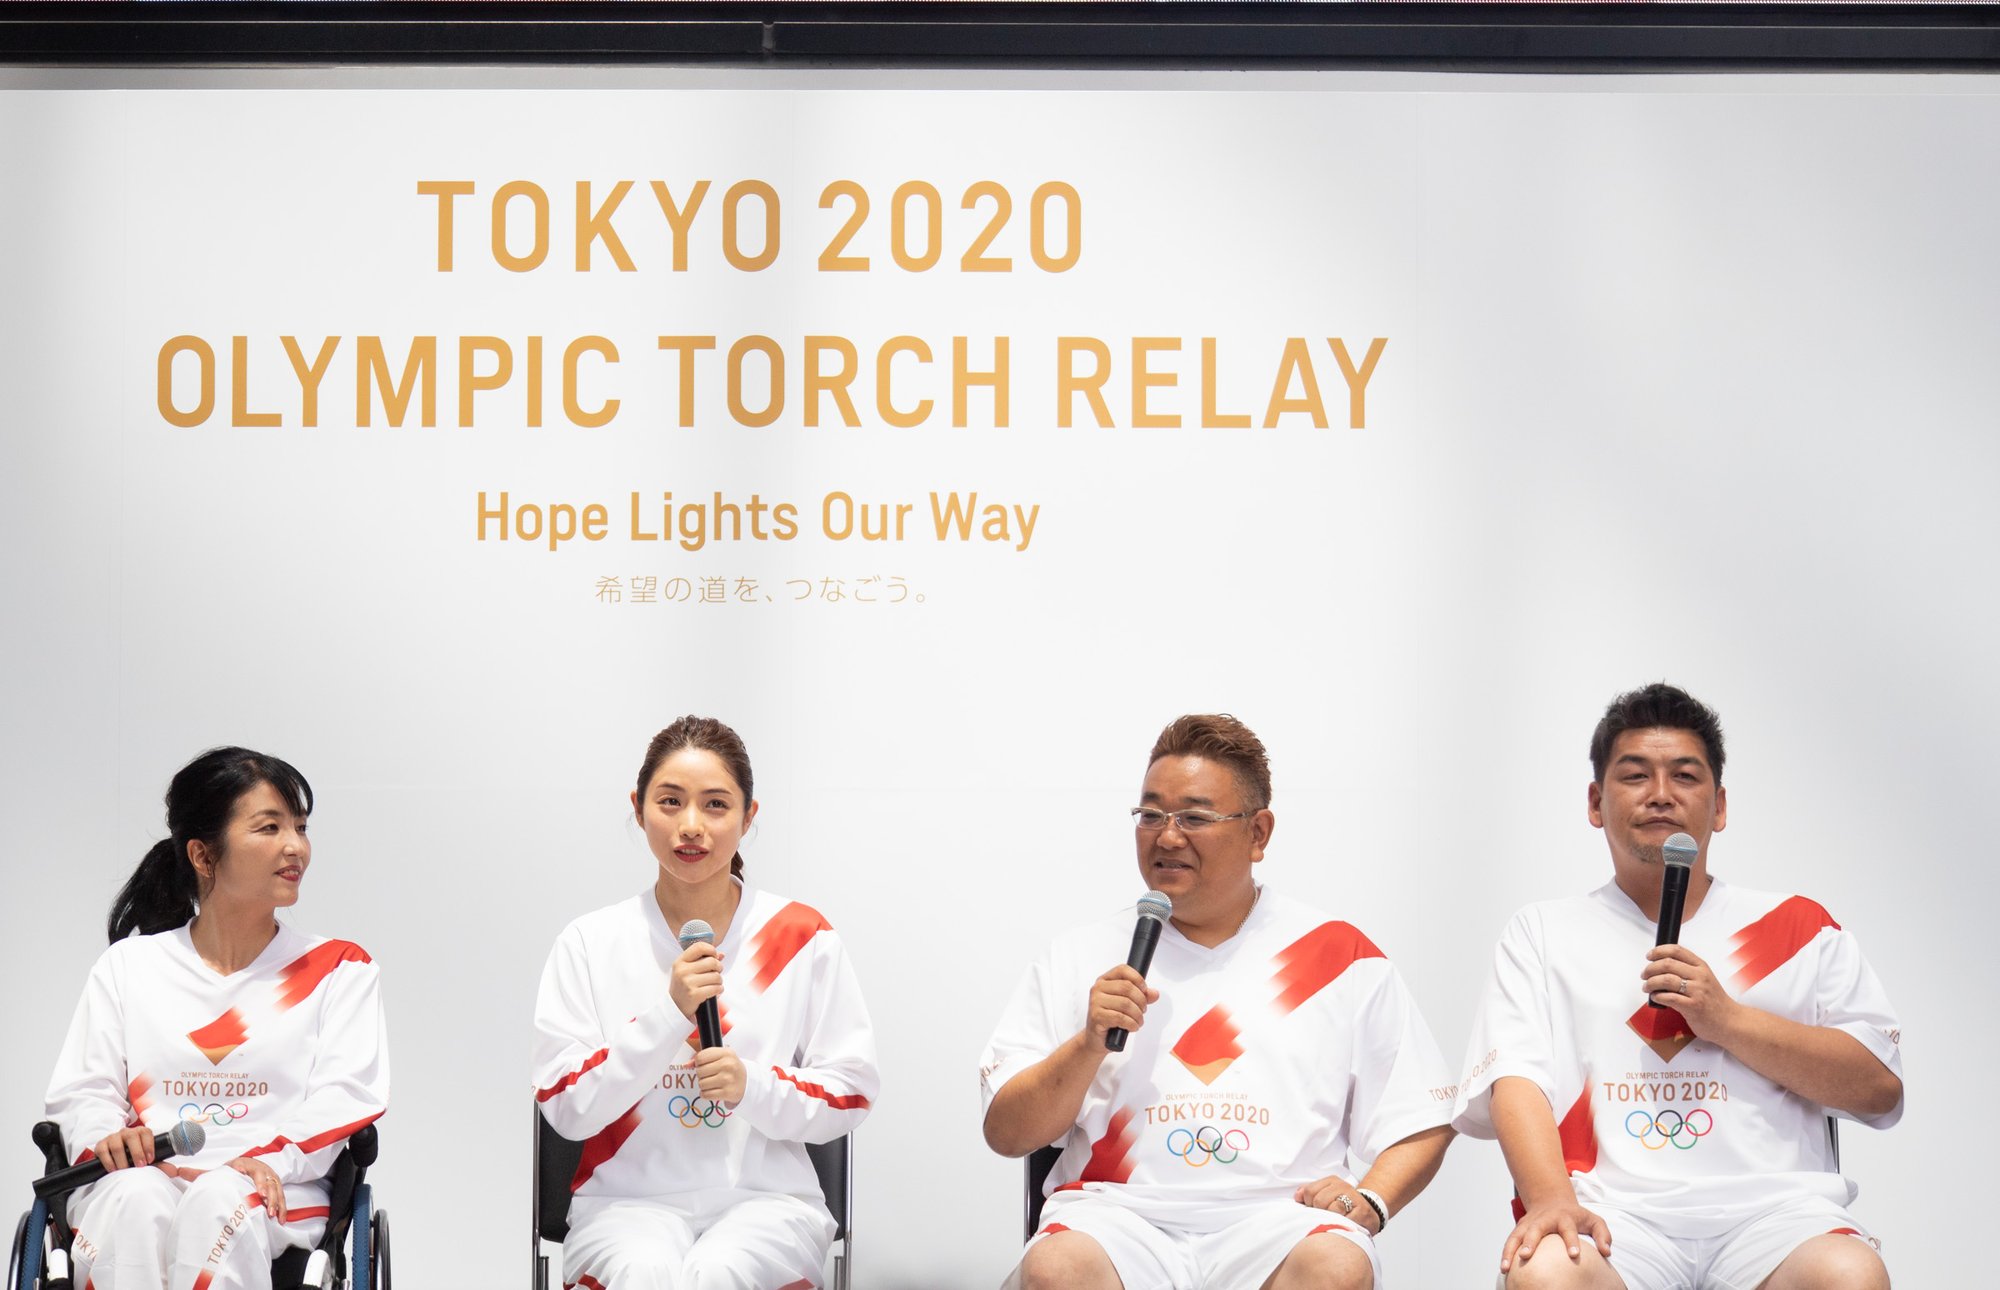 柔らかい 【非売品】東京2020オリンピック 公式聖火リレーユニホーム